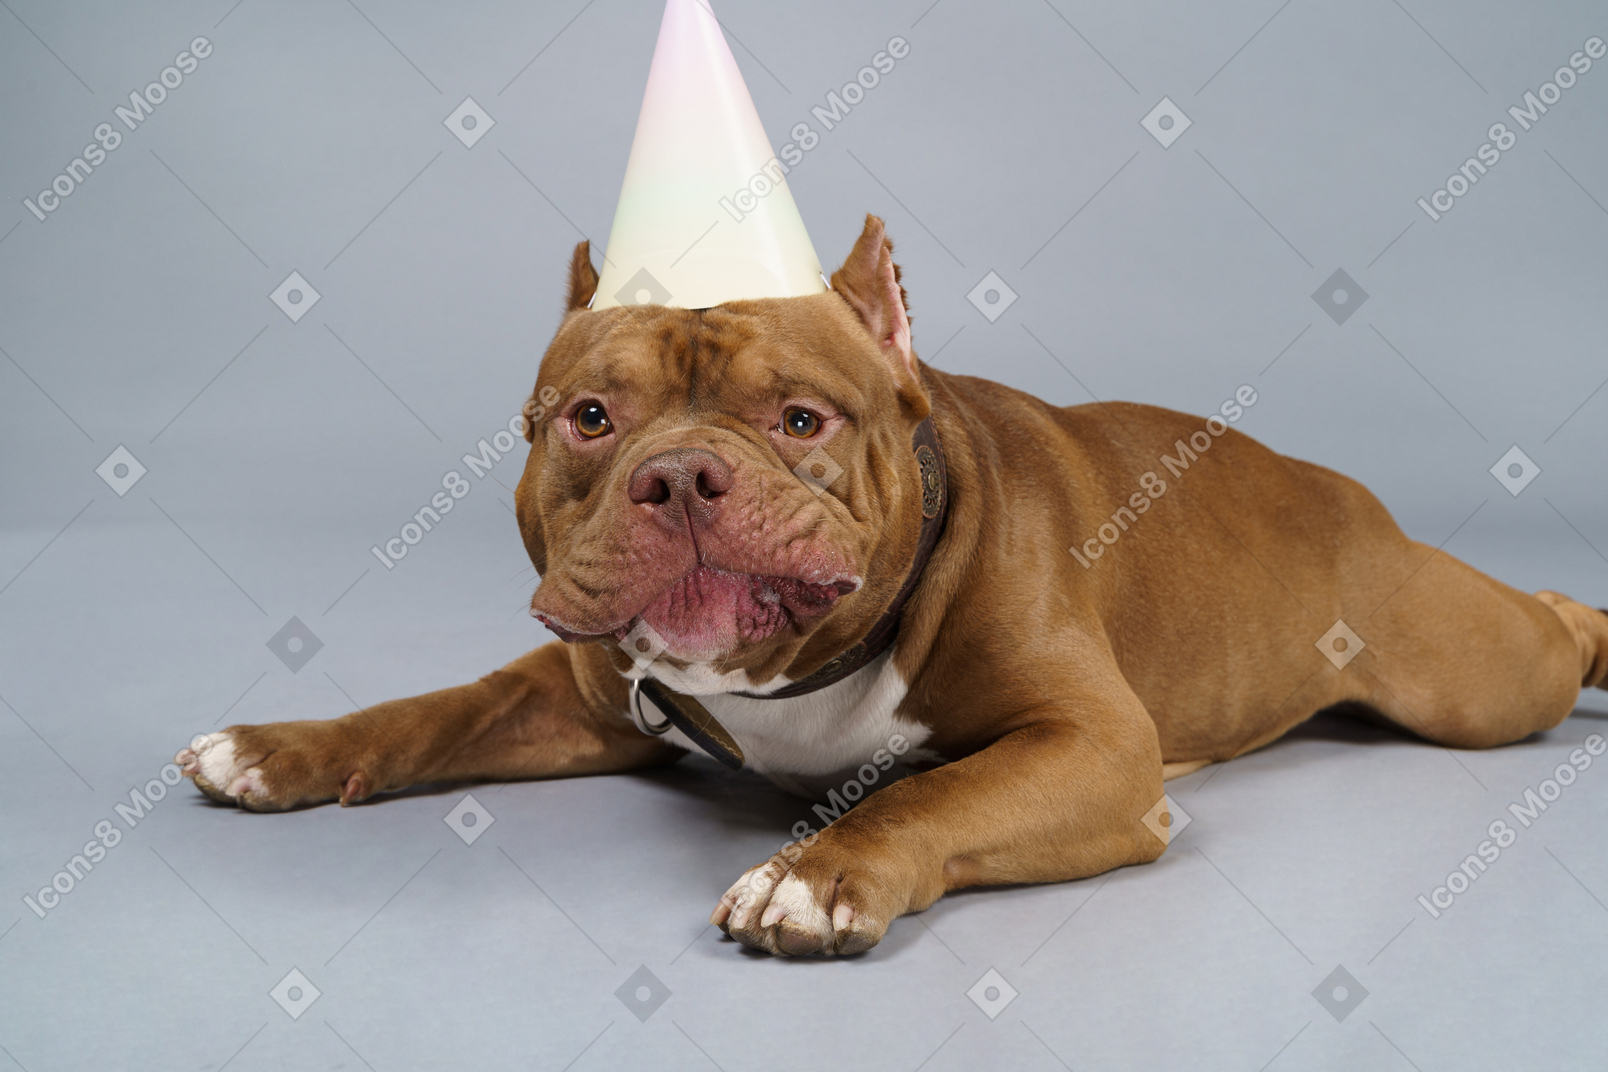 Close-up a sad lying brown bulldog in a dog collar and cap looking at camera